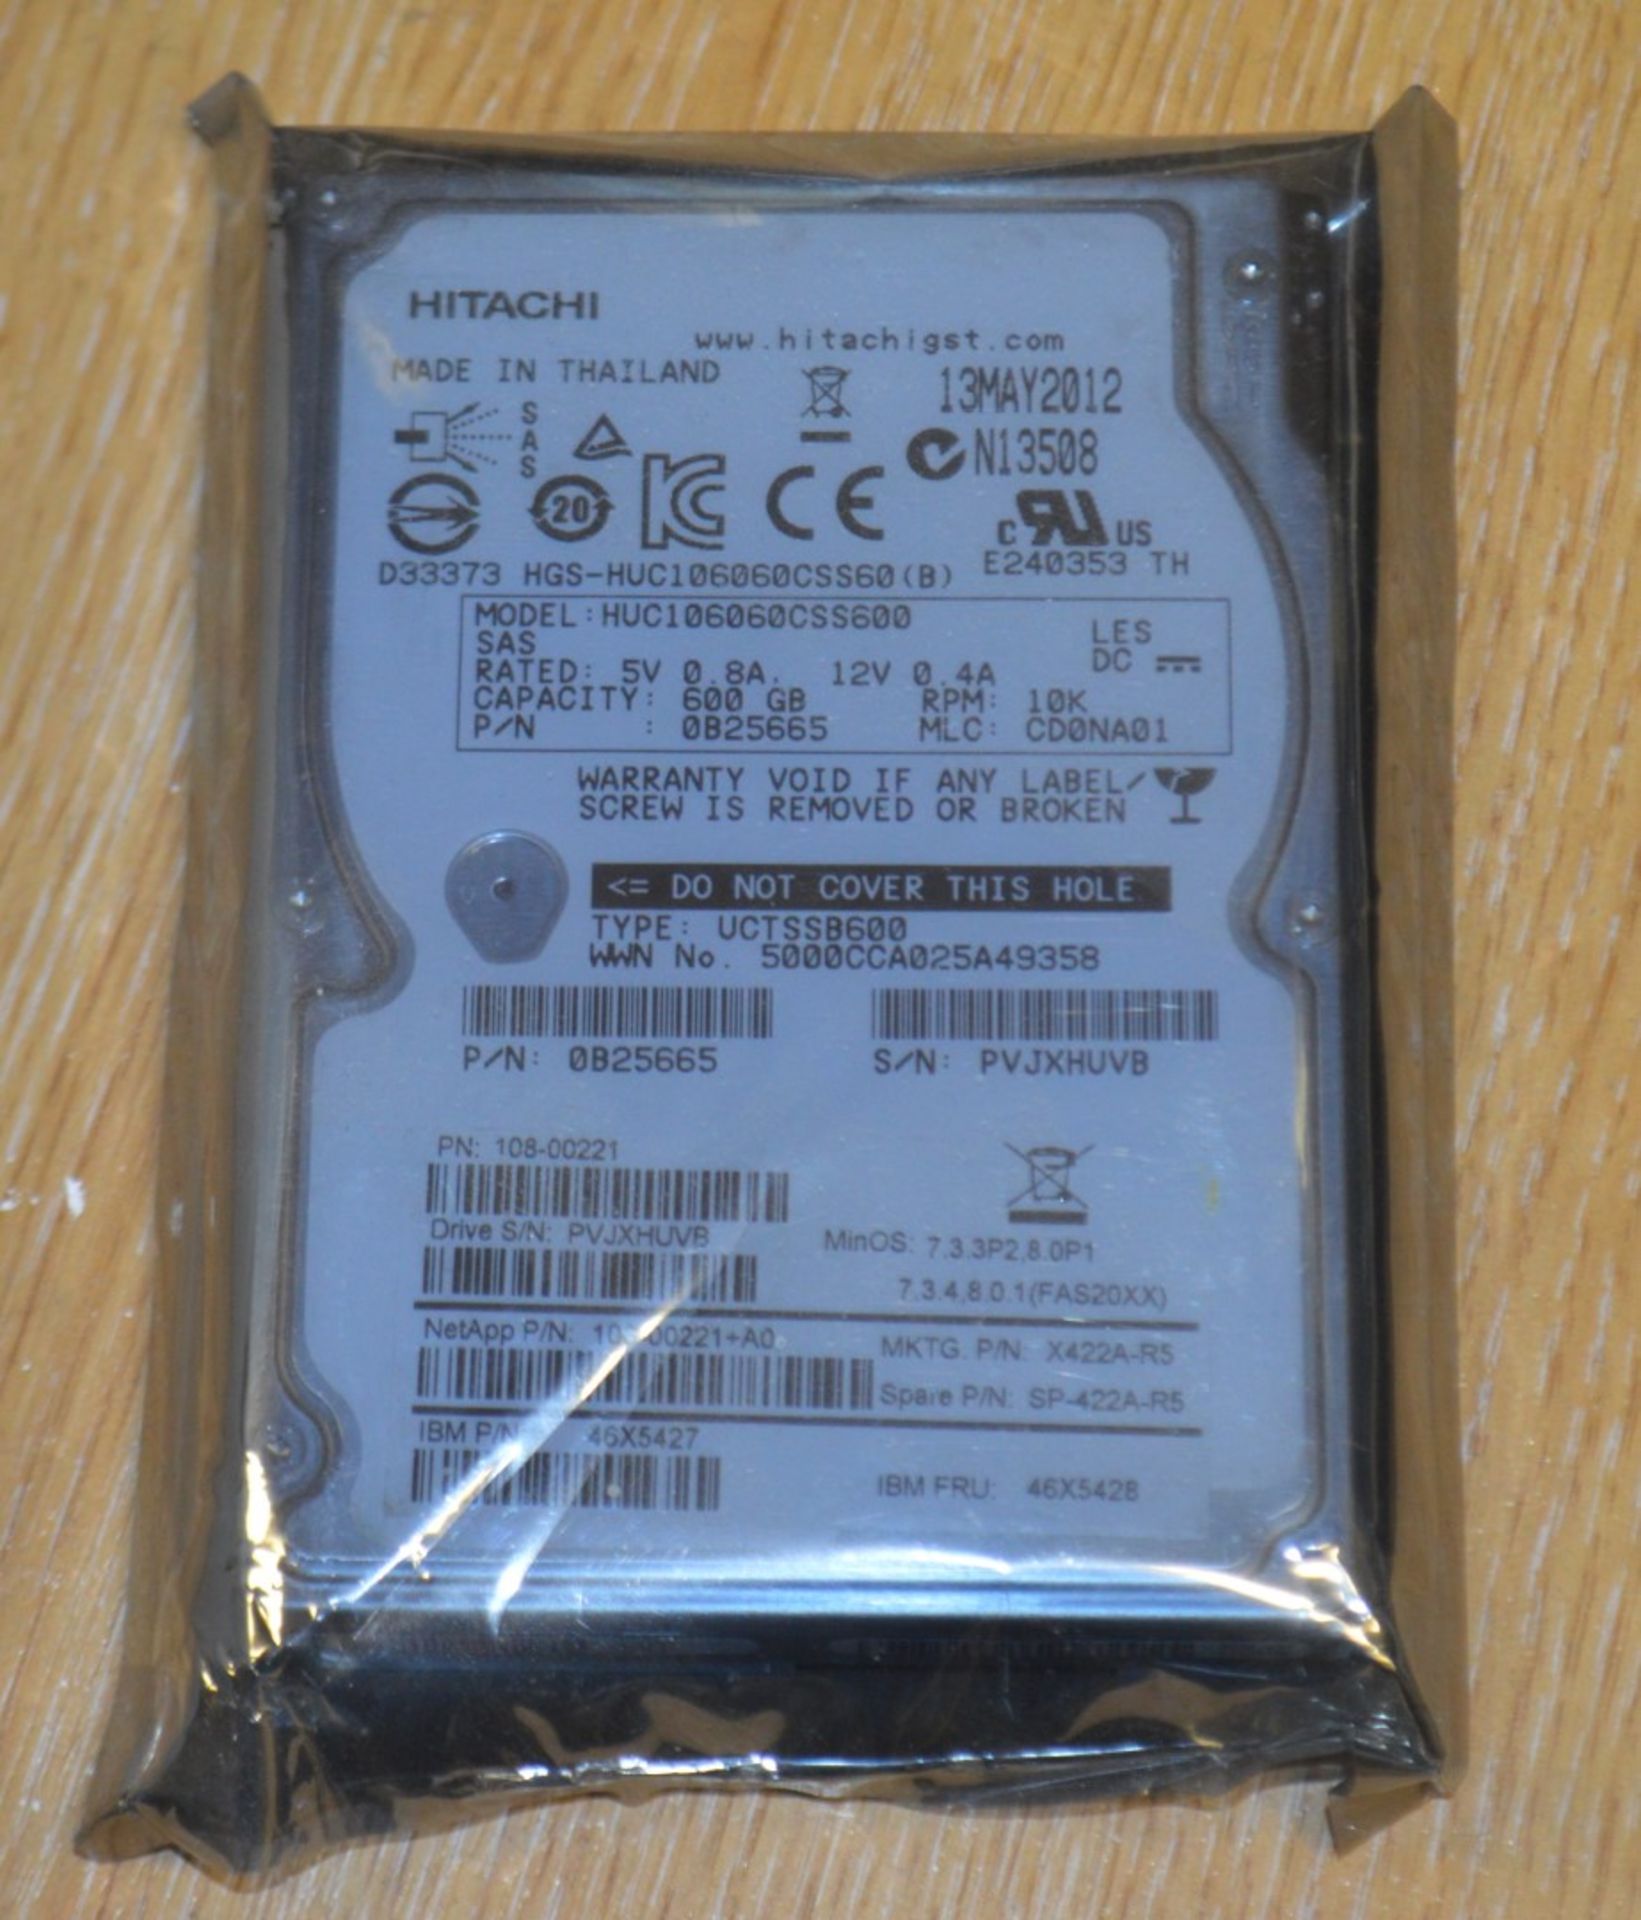 1 x Hitachi  600GB 10K RPM 64MB Cache 6.0Gbps SAS 2.5" Hard Drive - HUC106060CSS600 - CL011 - Ref: